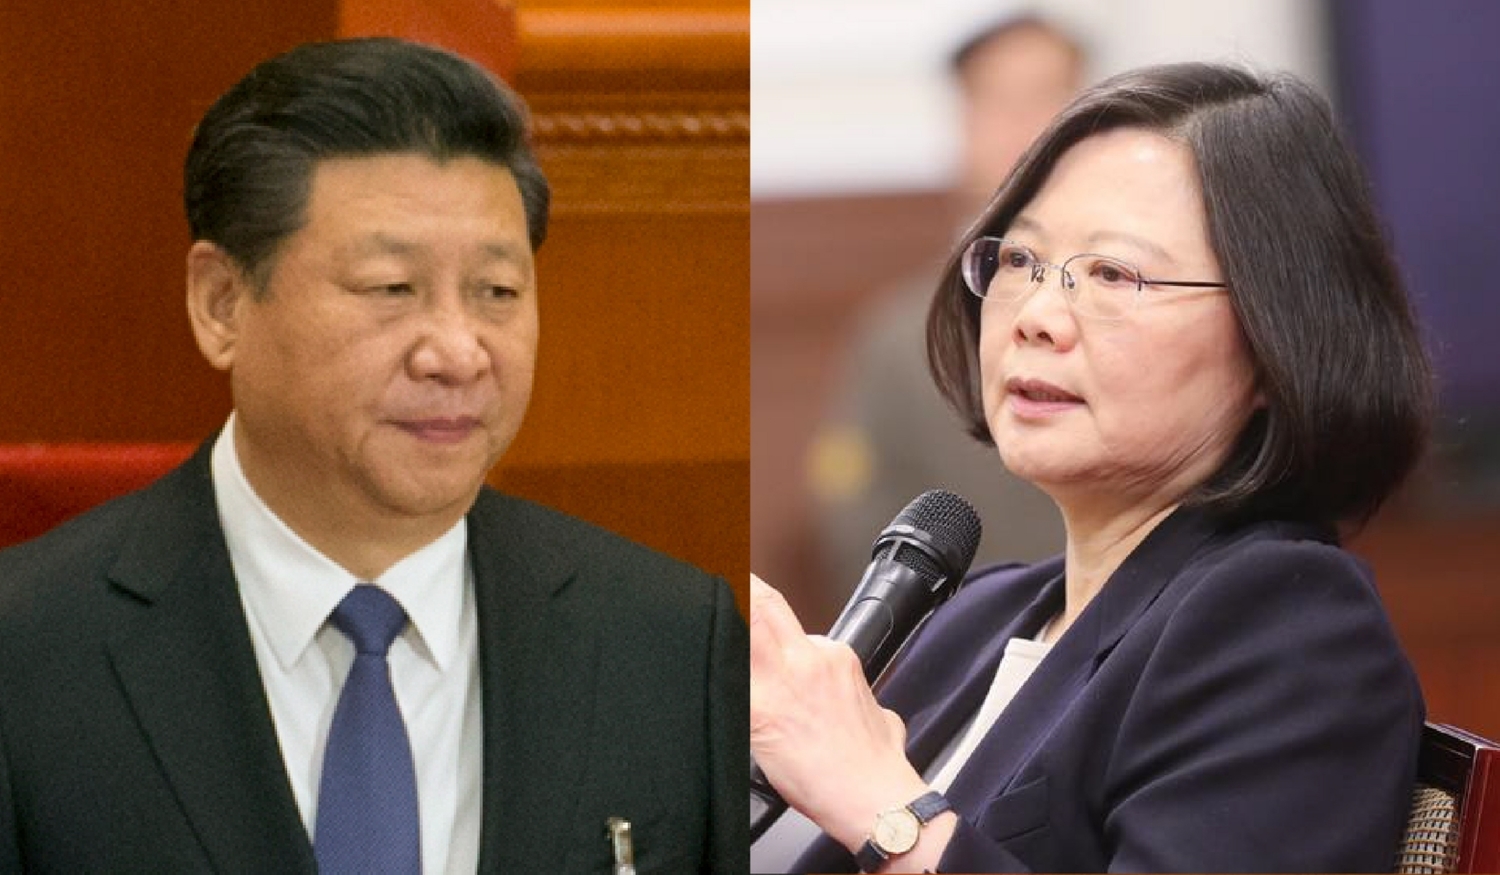 戰貓外交對抗中國戰狼！日媒:民主且挺人權的台灣國際形象大幅提升